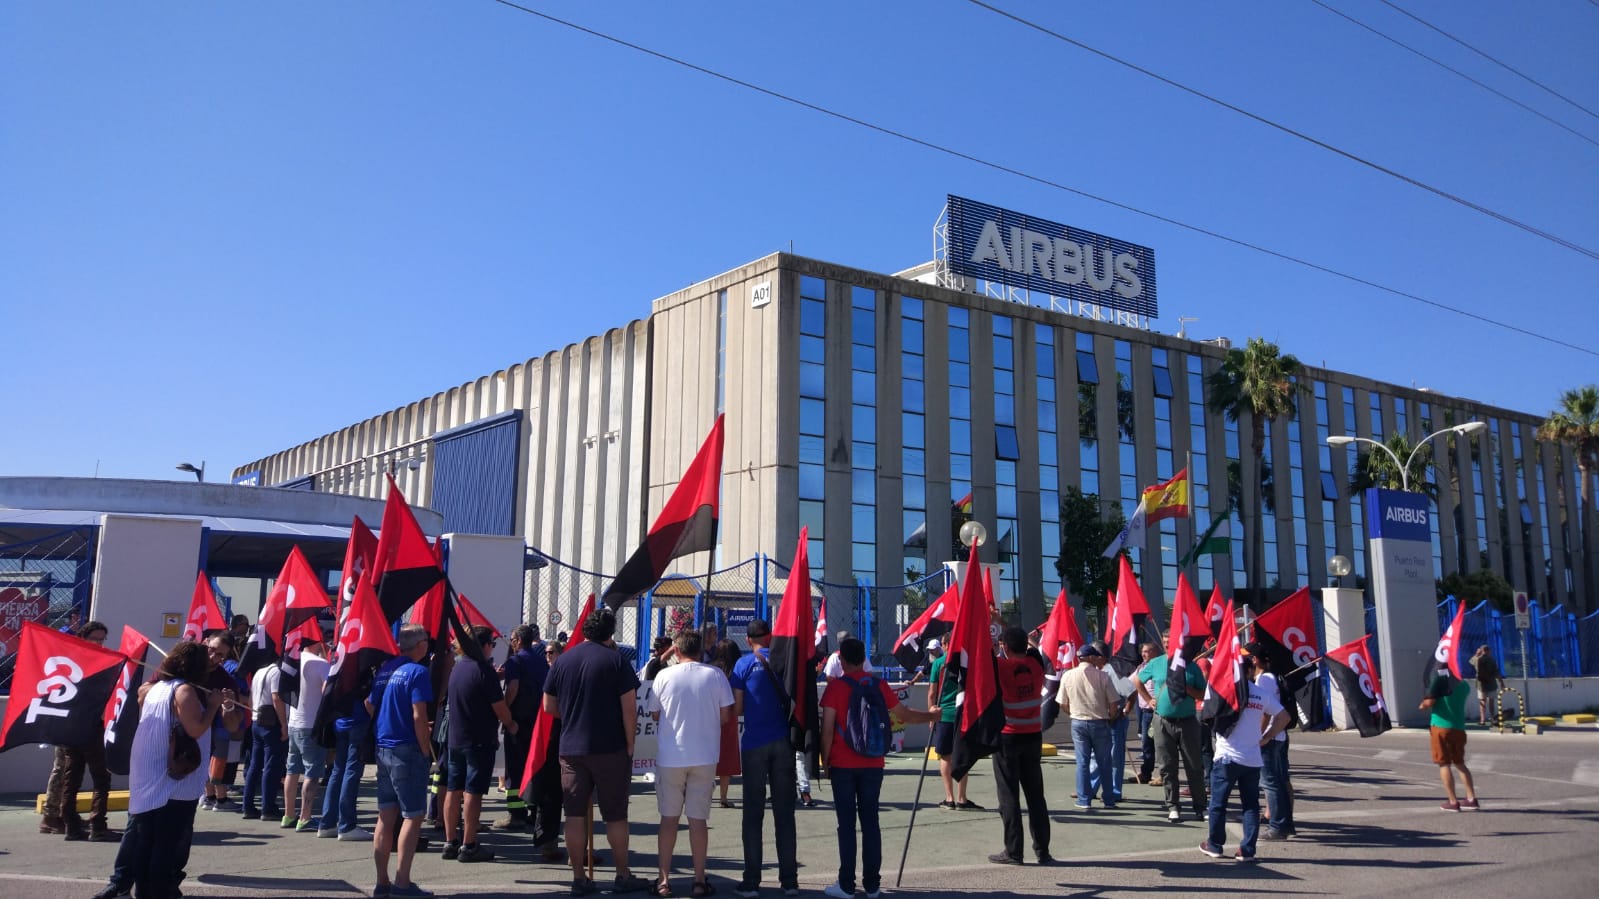 Huelga general en Airbus convocada este jueves 5 de julio. FOTO: LAVOZDELSUR.ES.